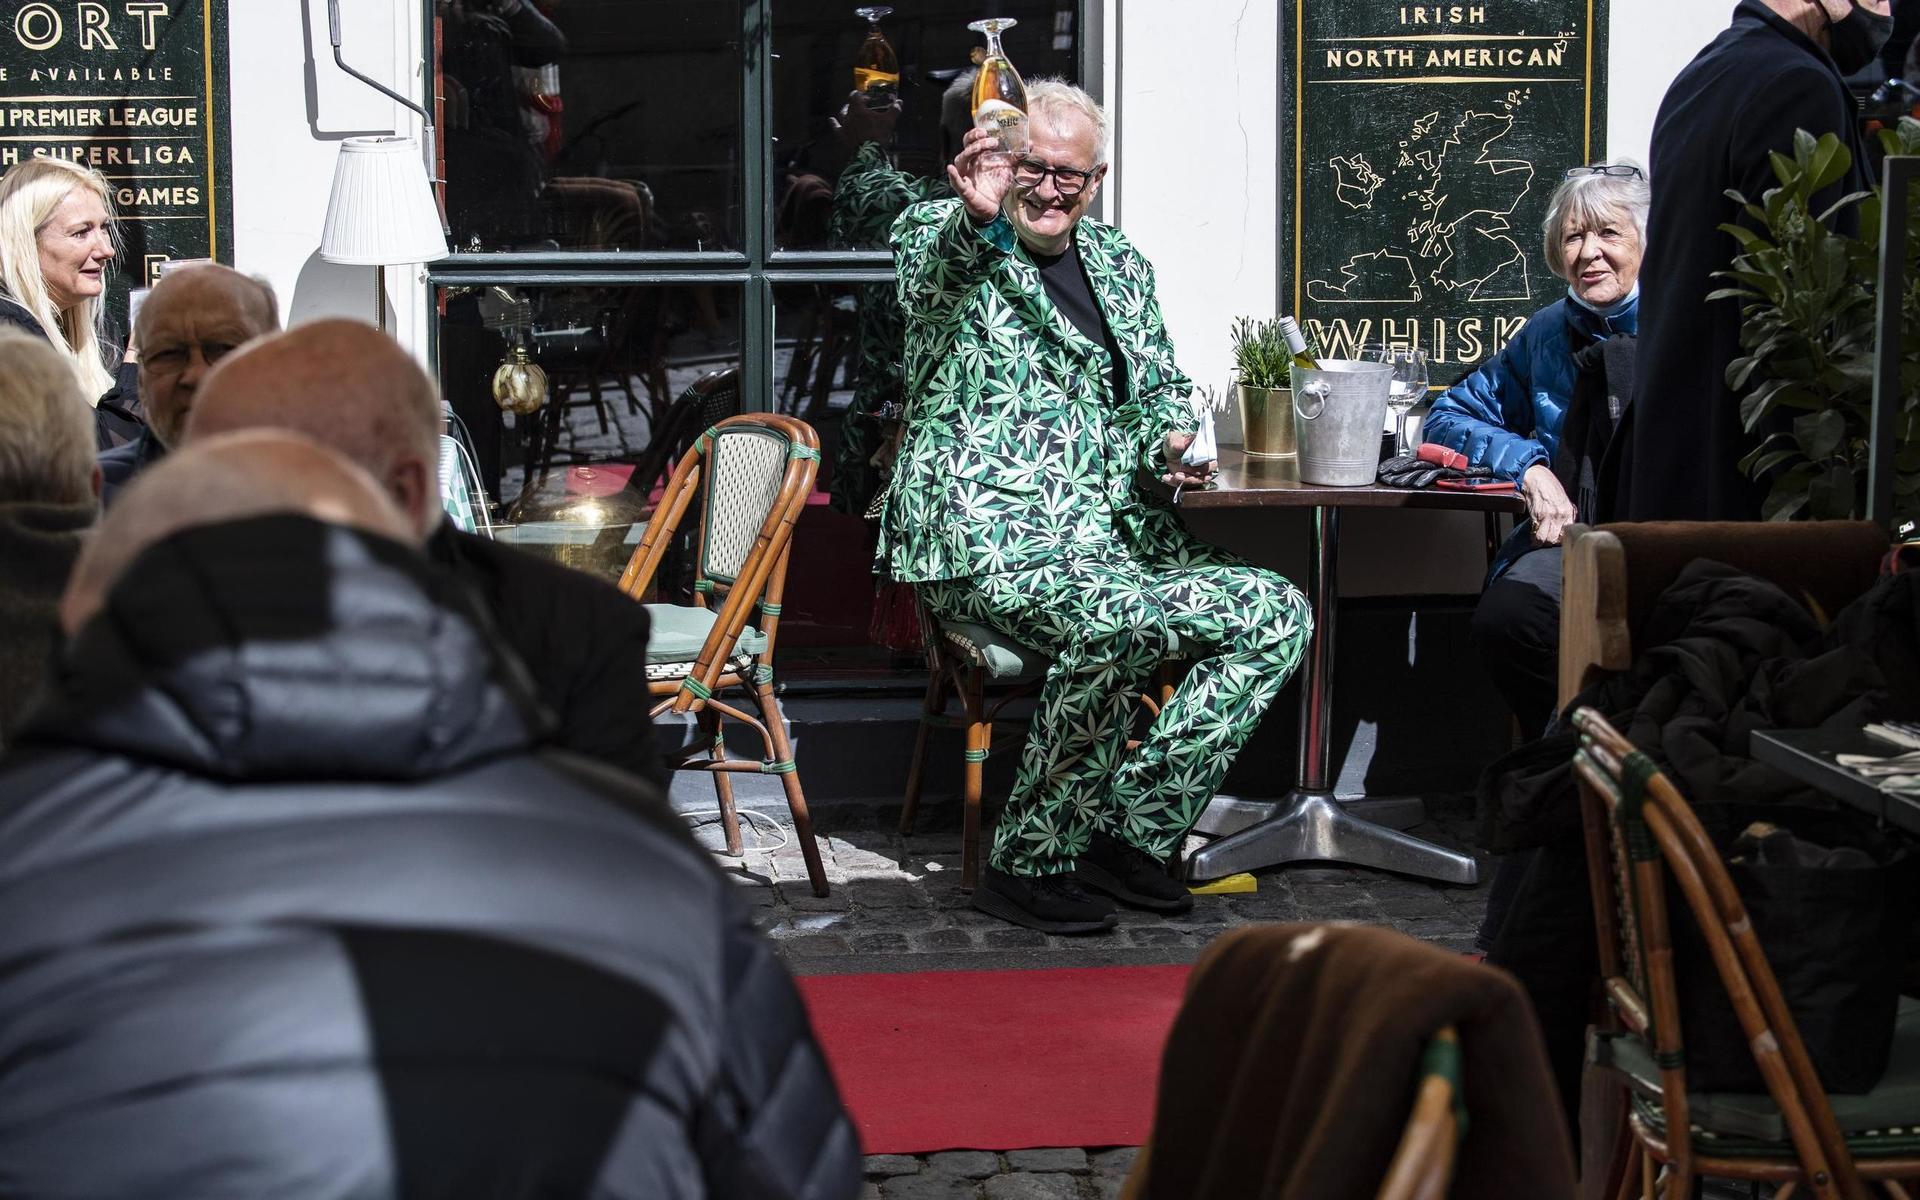 Michael Olsen (mitten), ägare Nyhavnskroen, firade bland bland gästerna på uteserveringen i Nyhavn i Köpenhamn på onsdagen när Danmark i april öppnade upp för restaurangbesök efter coronanedstängningen.